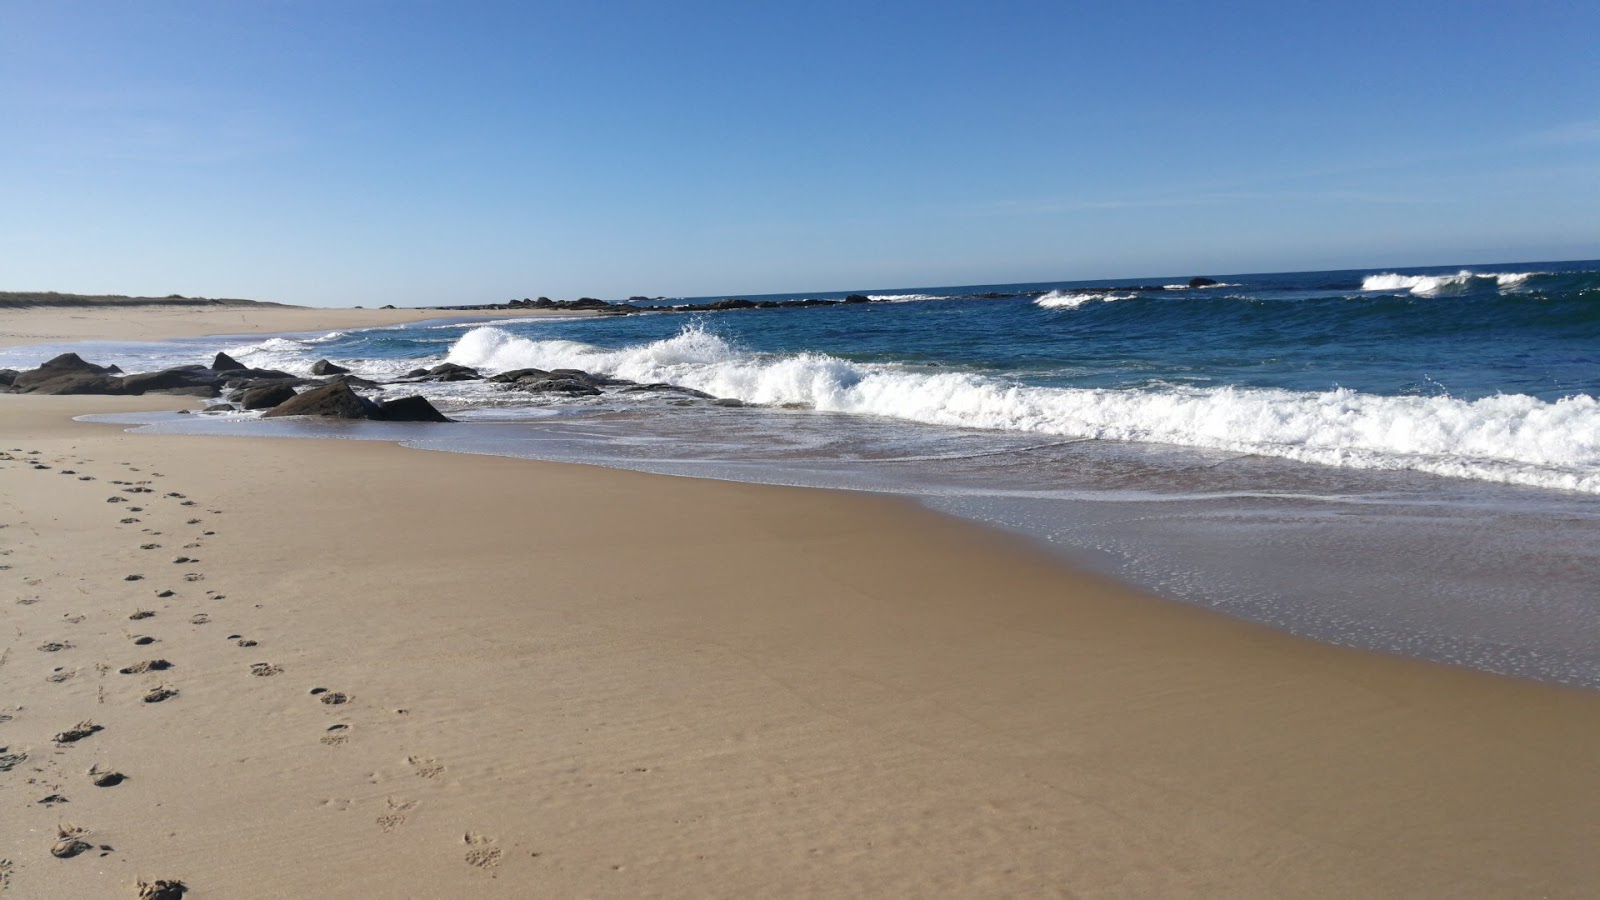 Fotografie cu Seixo beach cu o suprafață de nisip strălucitor